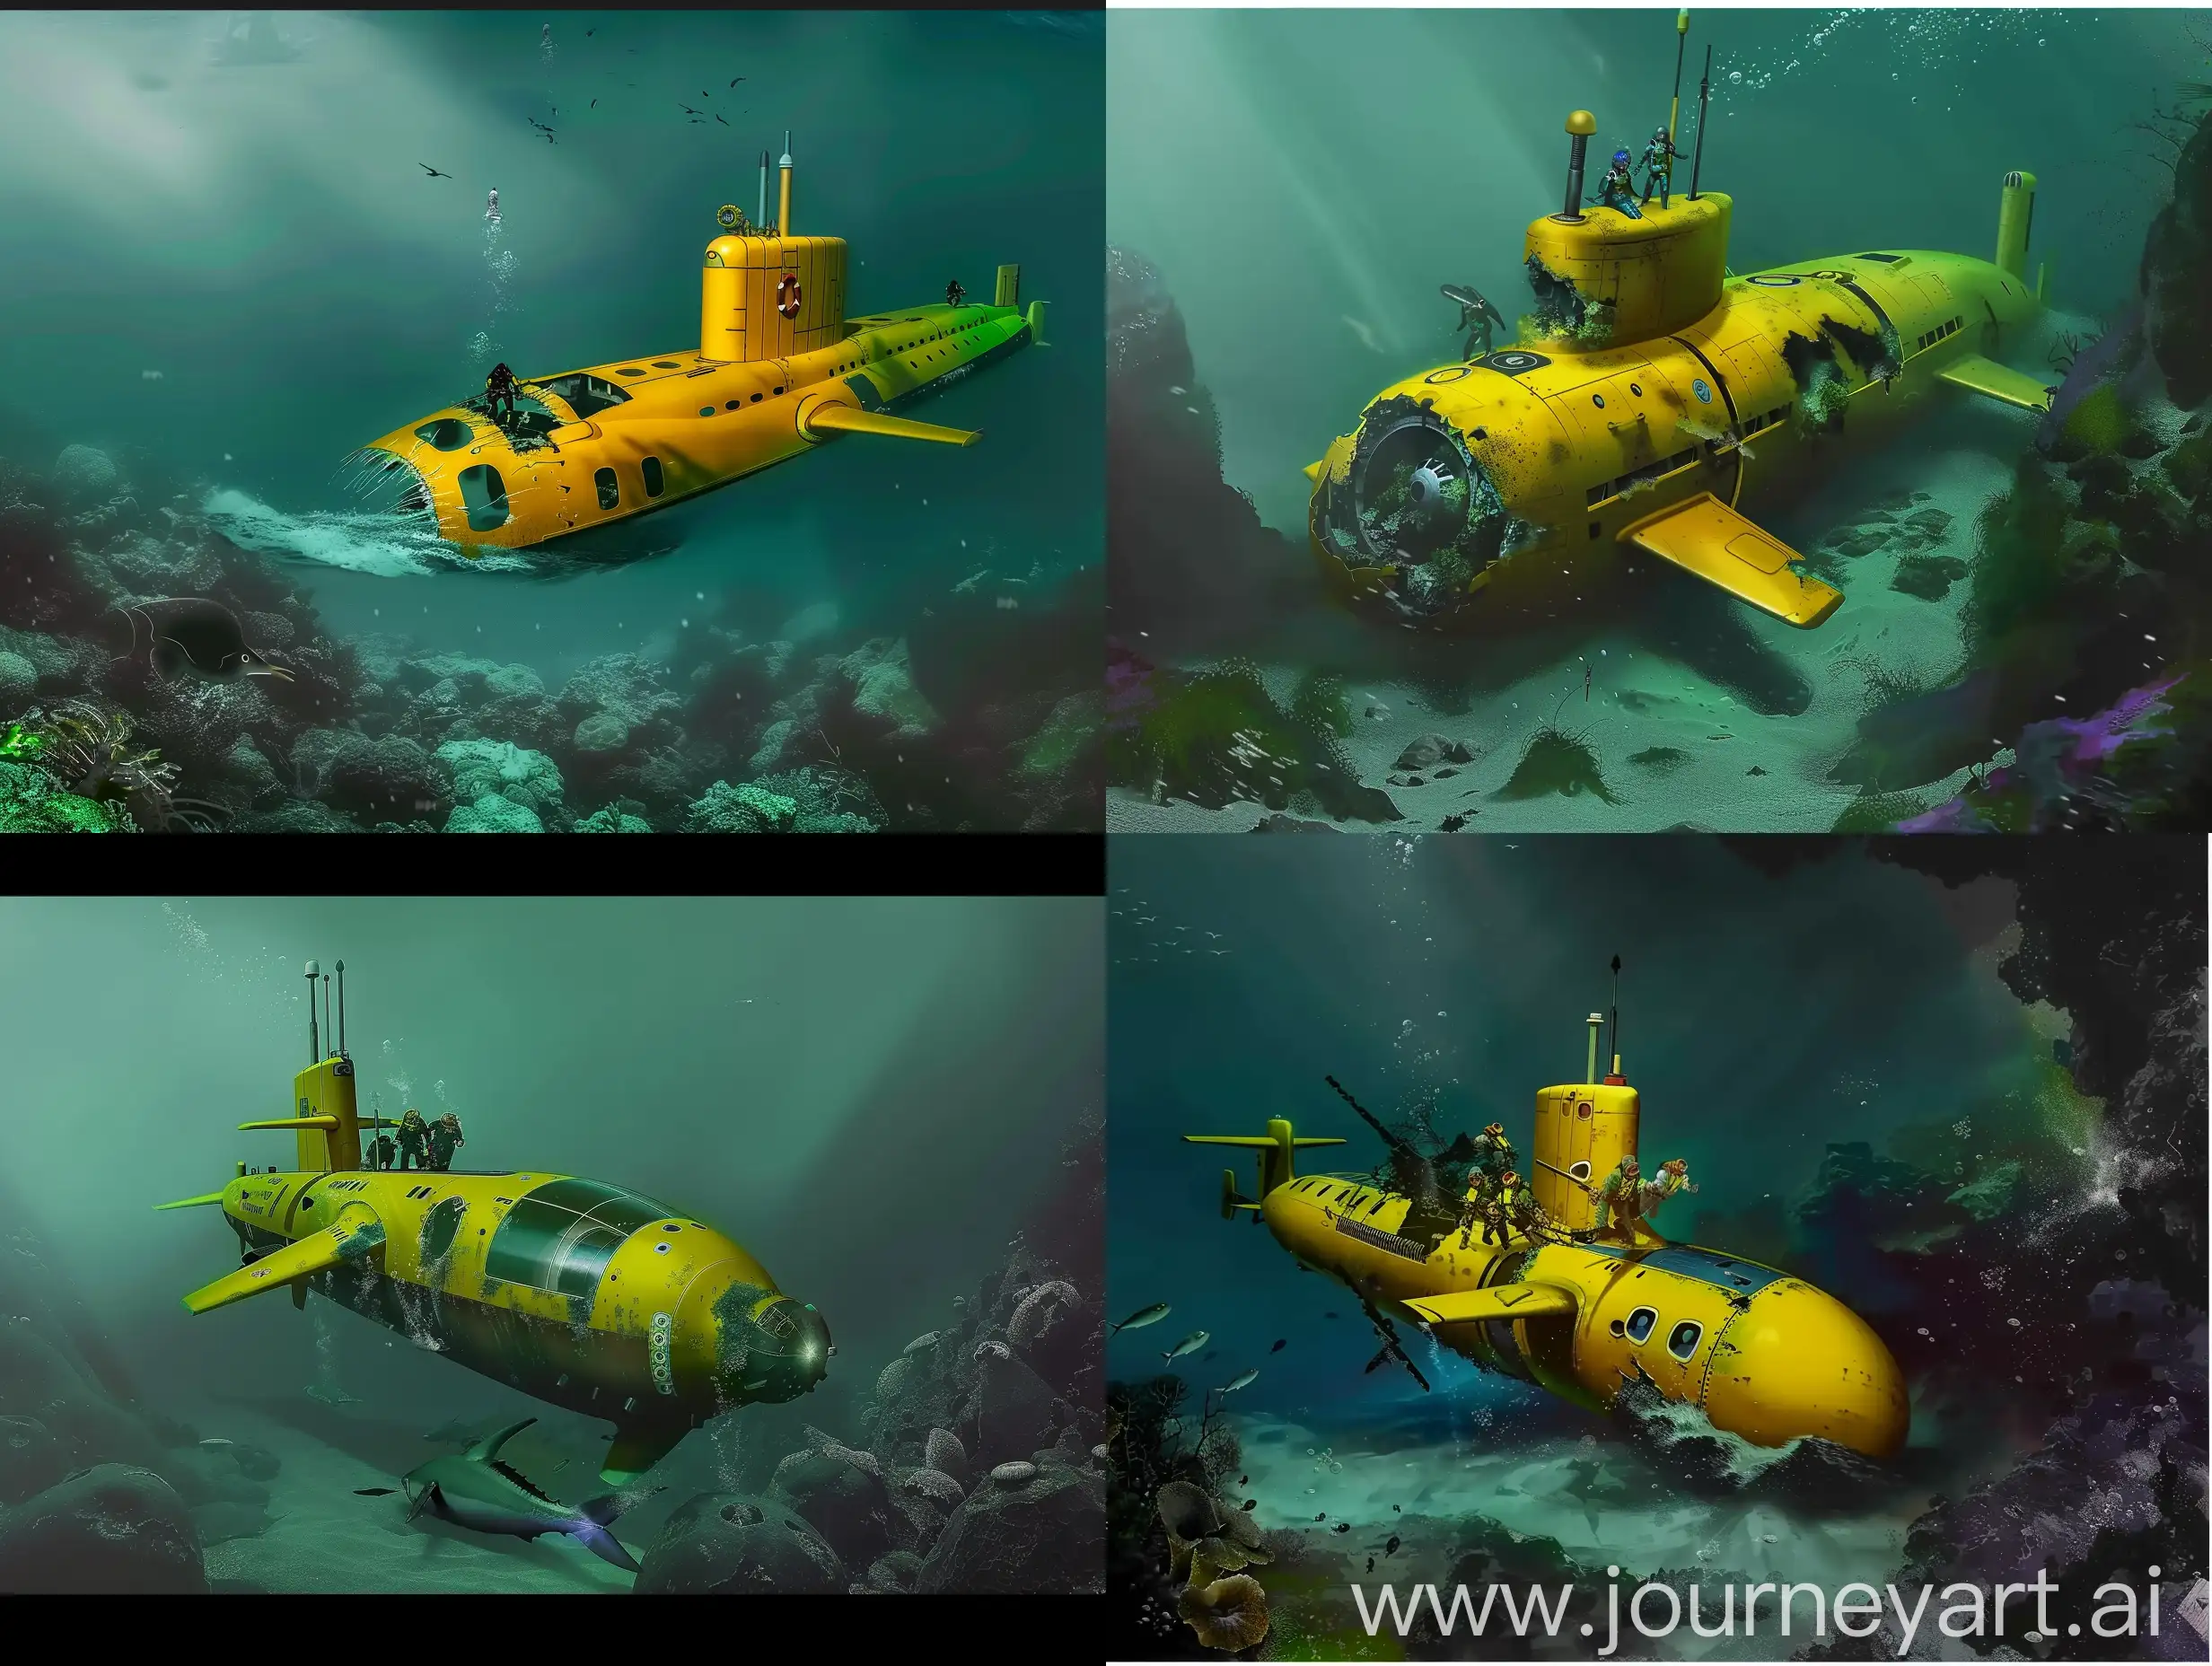 Submarine-Crash-Realistic-Scene-of-Crew-Abandoning-Yellow-Submarine-on-Seabed